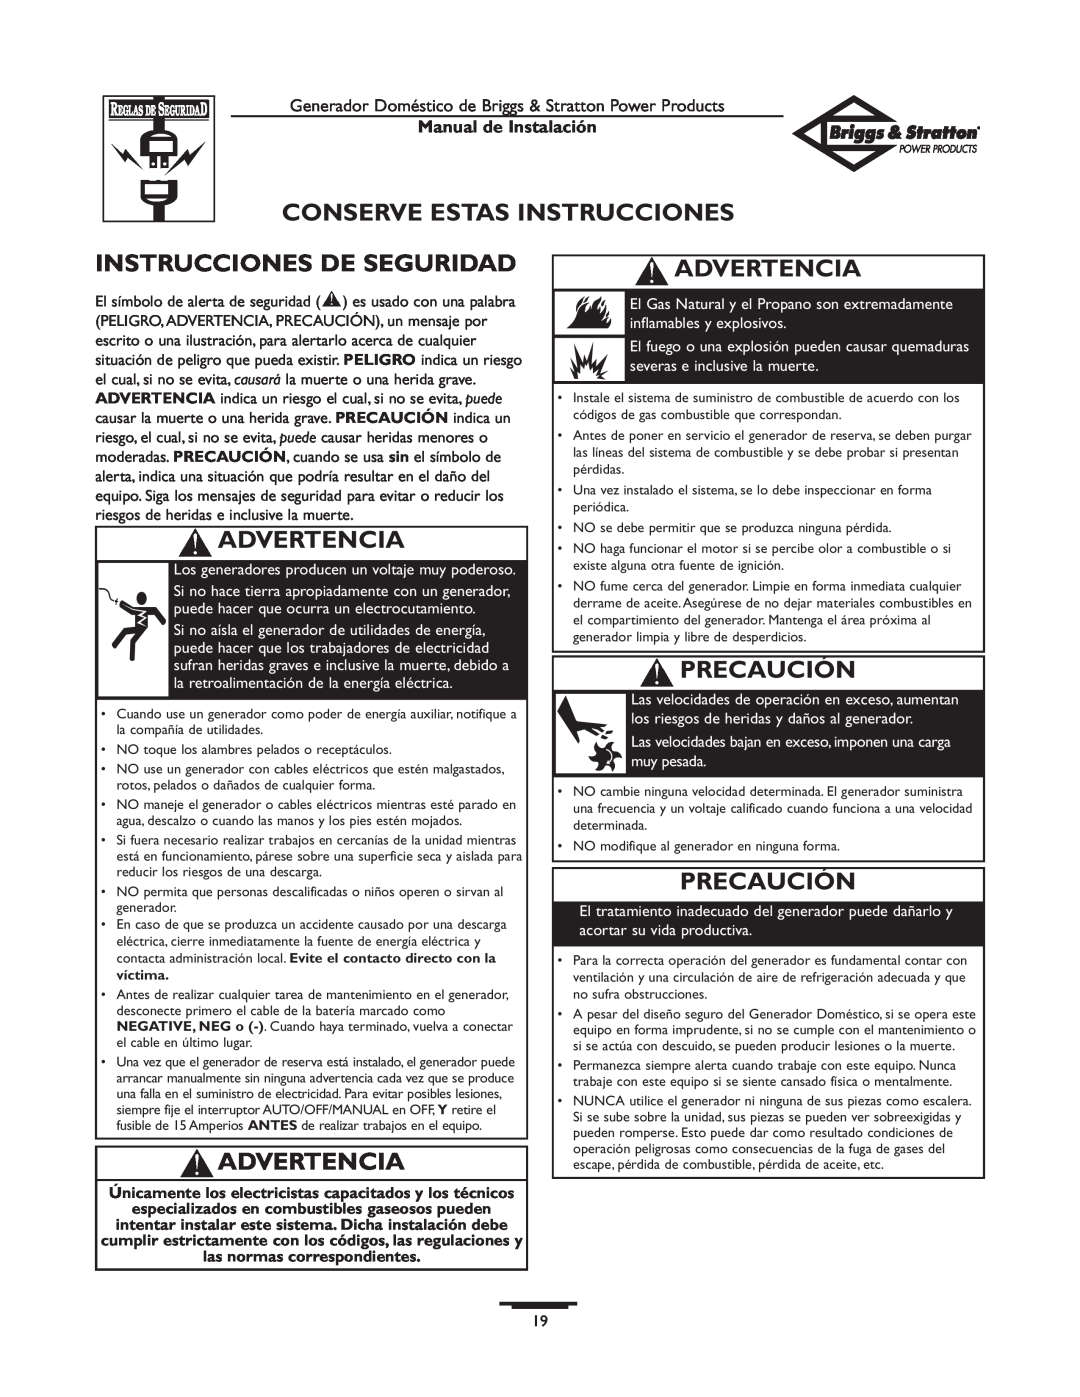 Briggs & Stratton 01938-0 manual Conserve Estas Instrucciones, Instrucciones De Seguridad, Advertencia, Precaución 